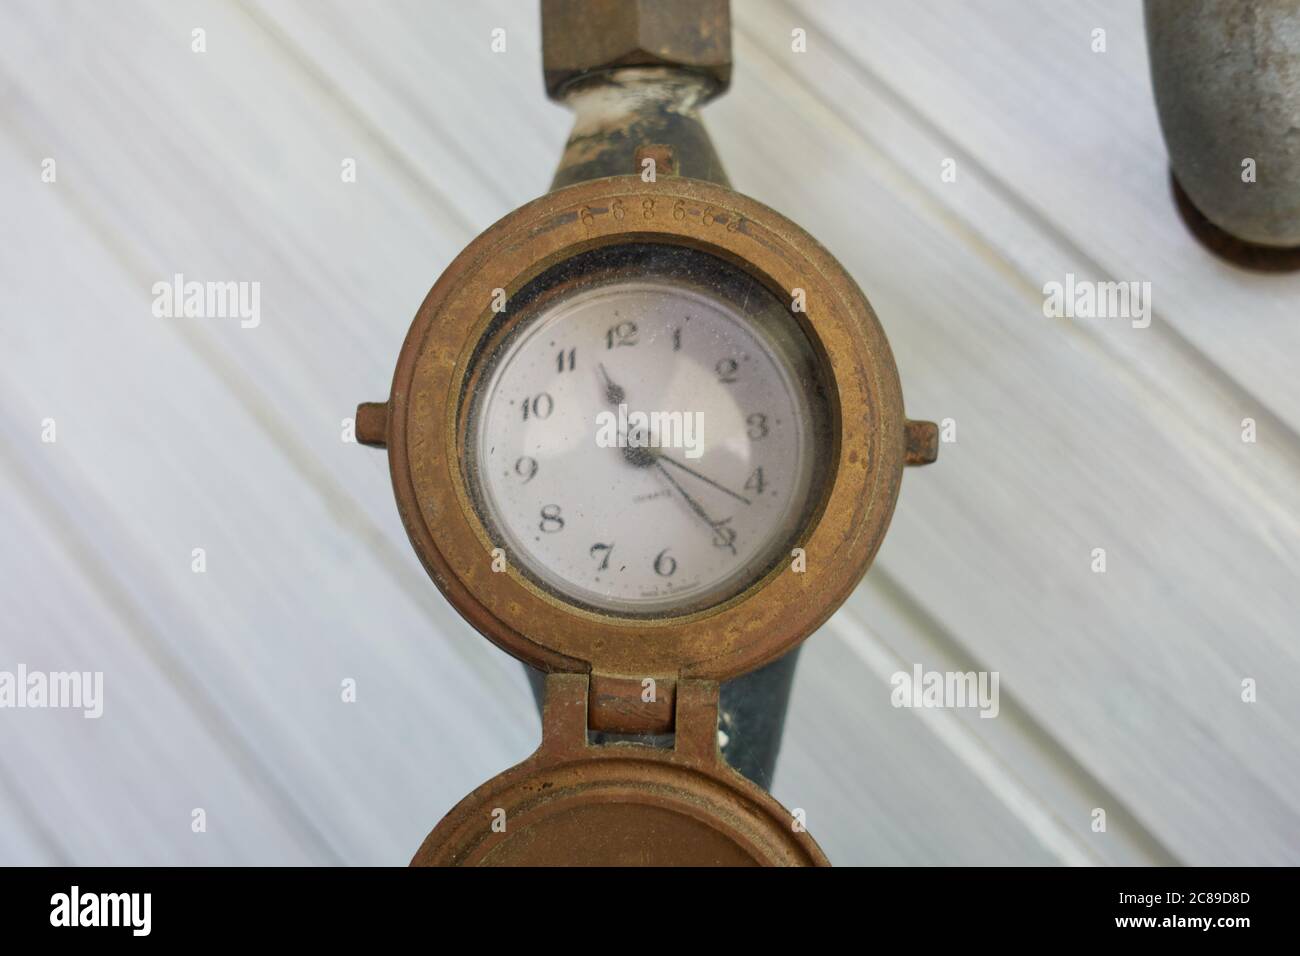 Horloge avec pointeur classique d'une horloge analogique accroché à un lambris blanc. Allemagne. Banque D'Images